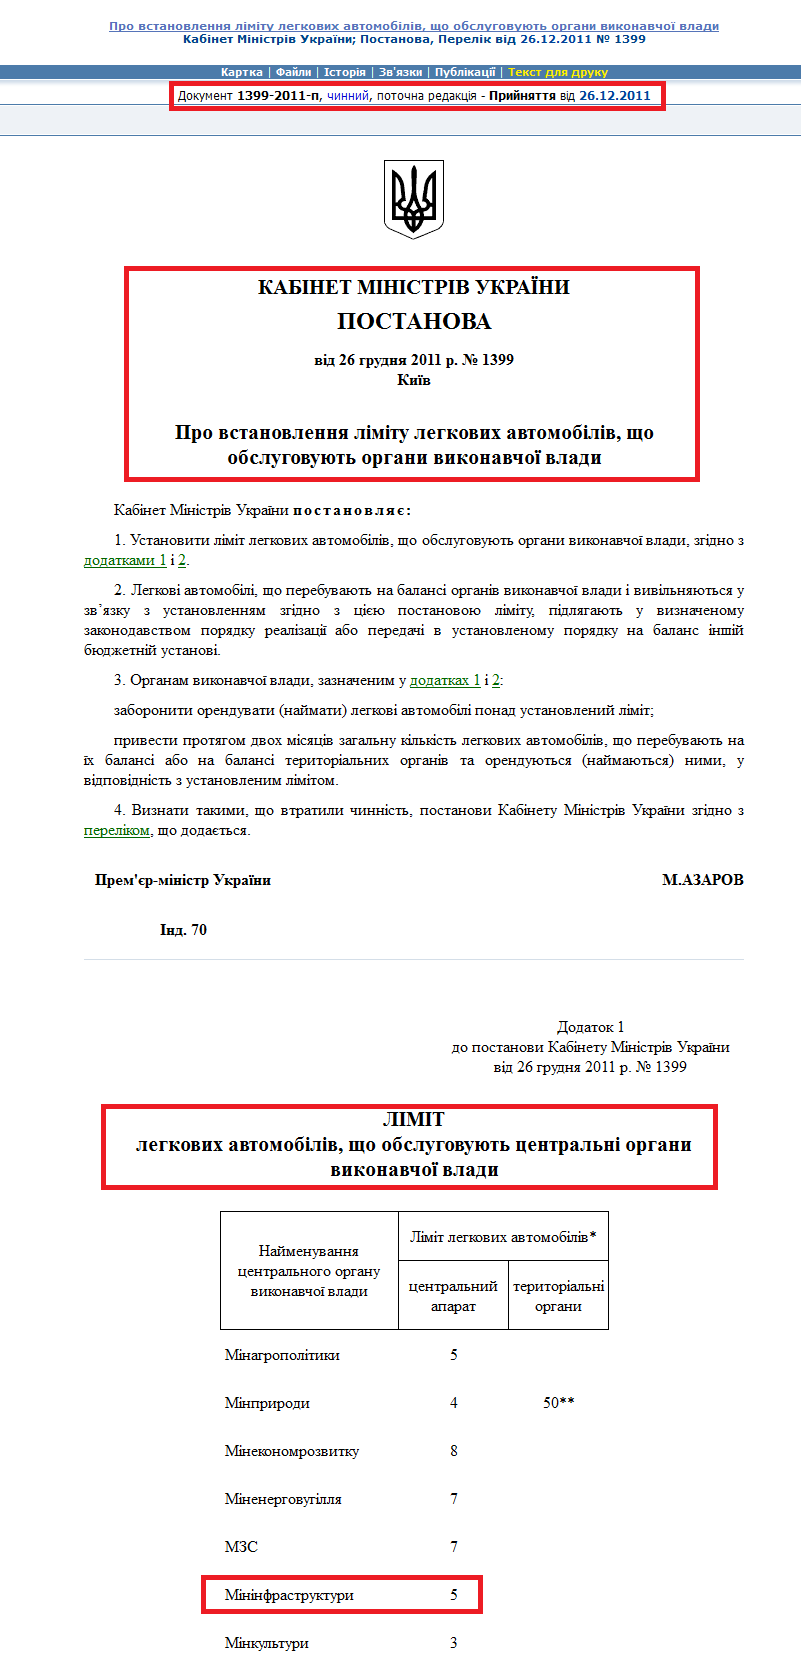 http://zakon2.rada.gov.ua/laws/show/1399-2011-%D0%BF